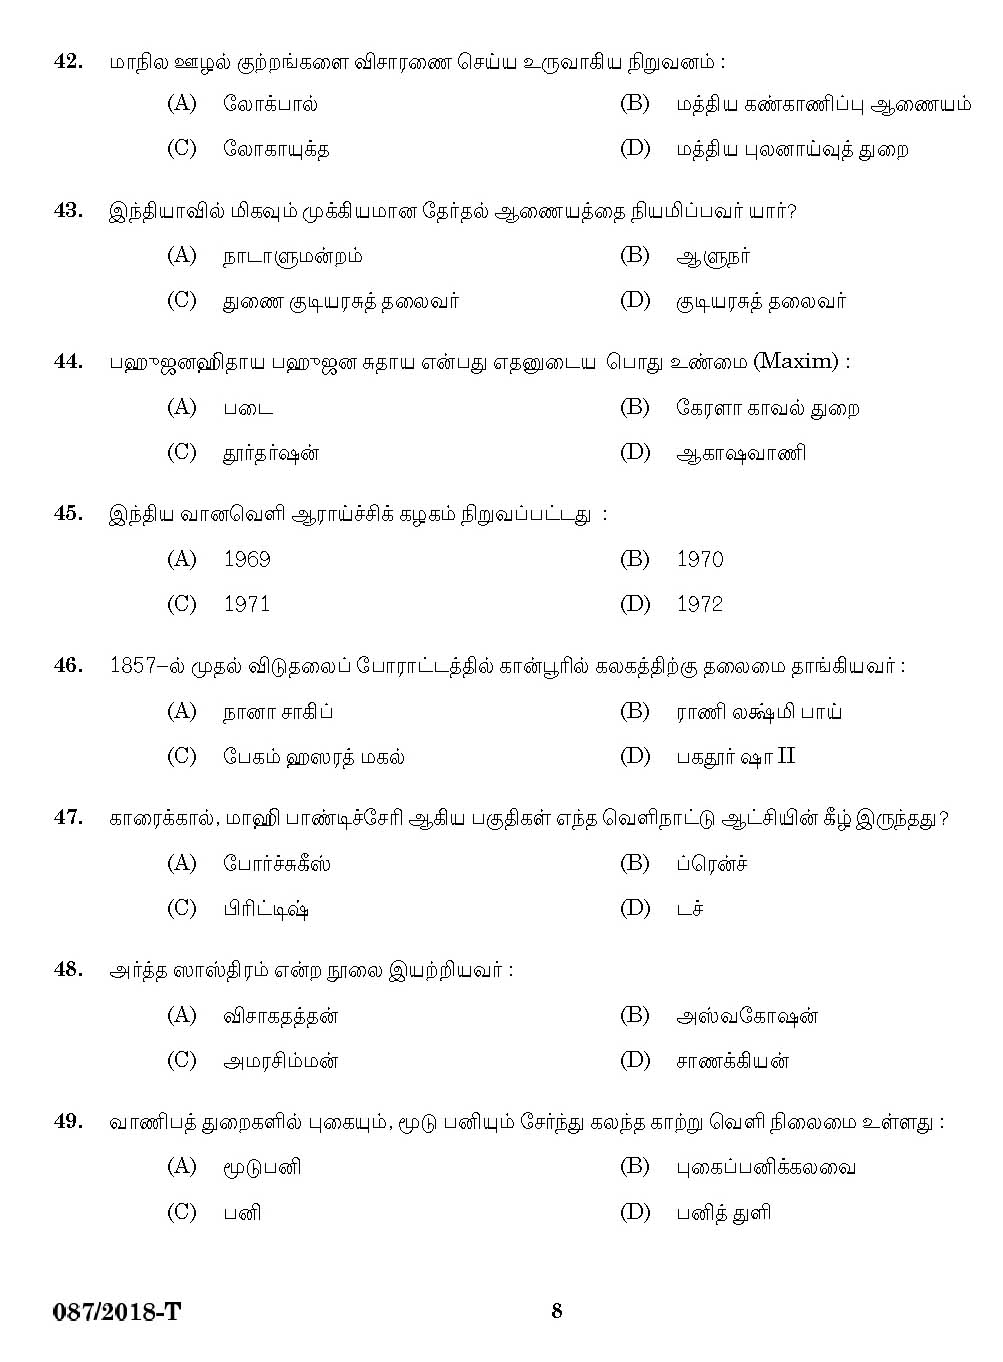 Kerala PSC KSRTC Driver Tamil Exam 2018 Code 0872018 6